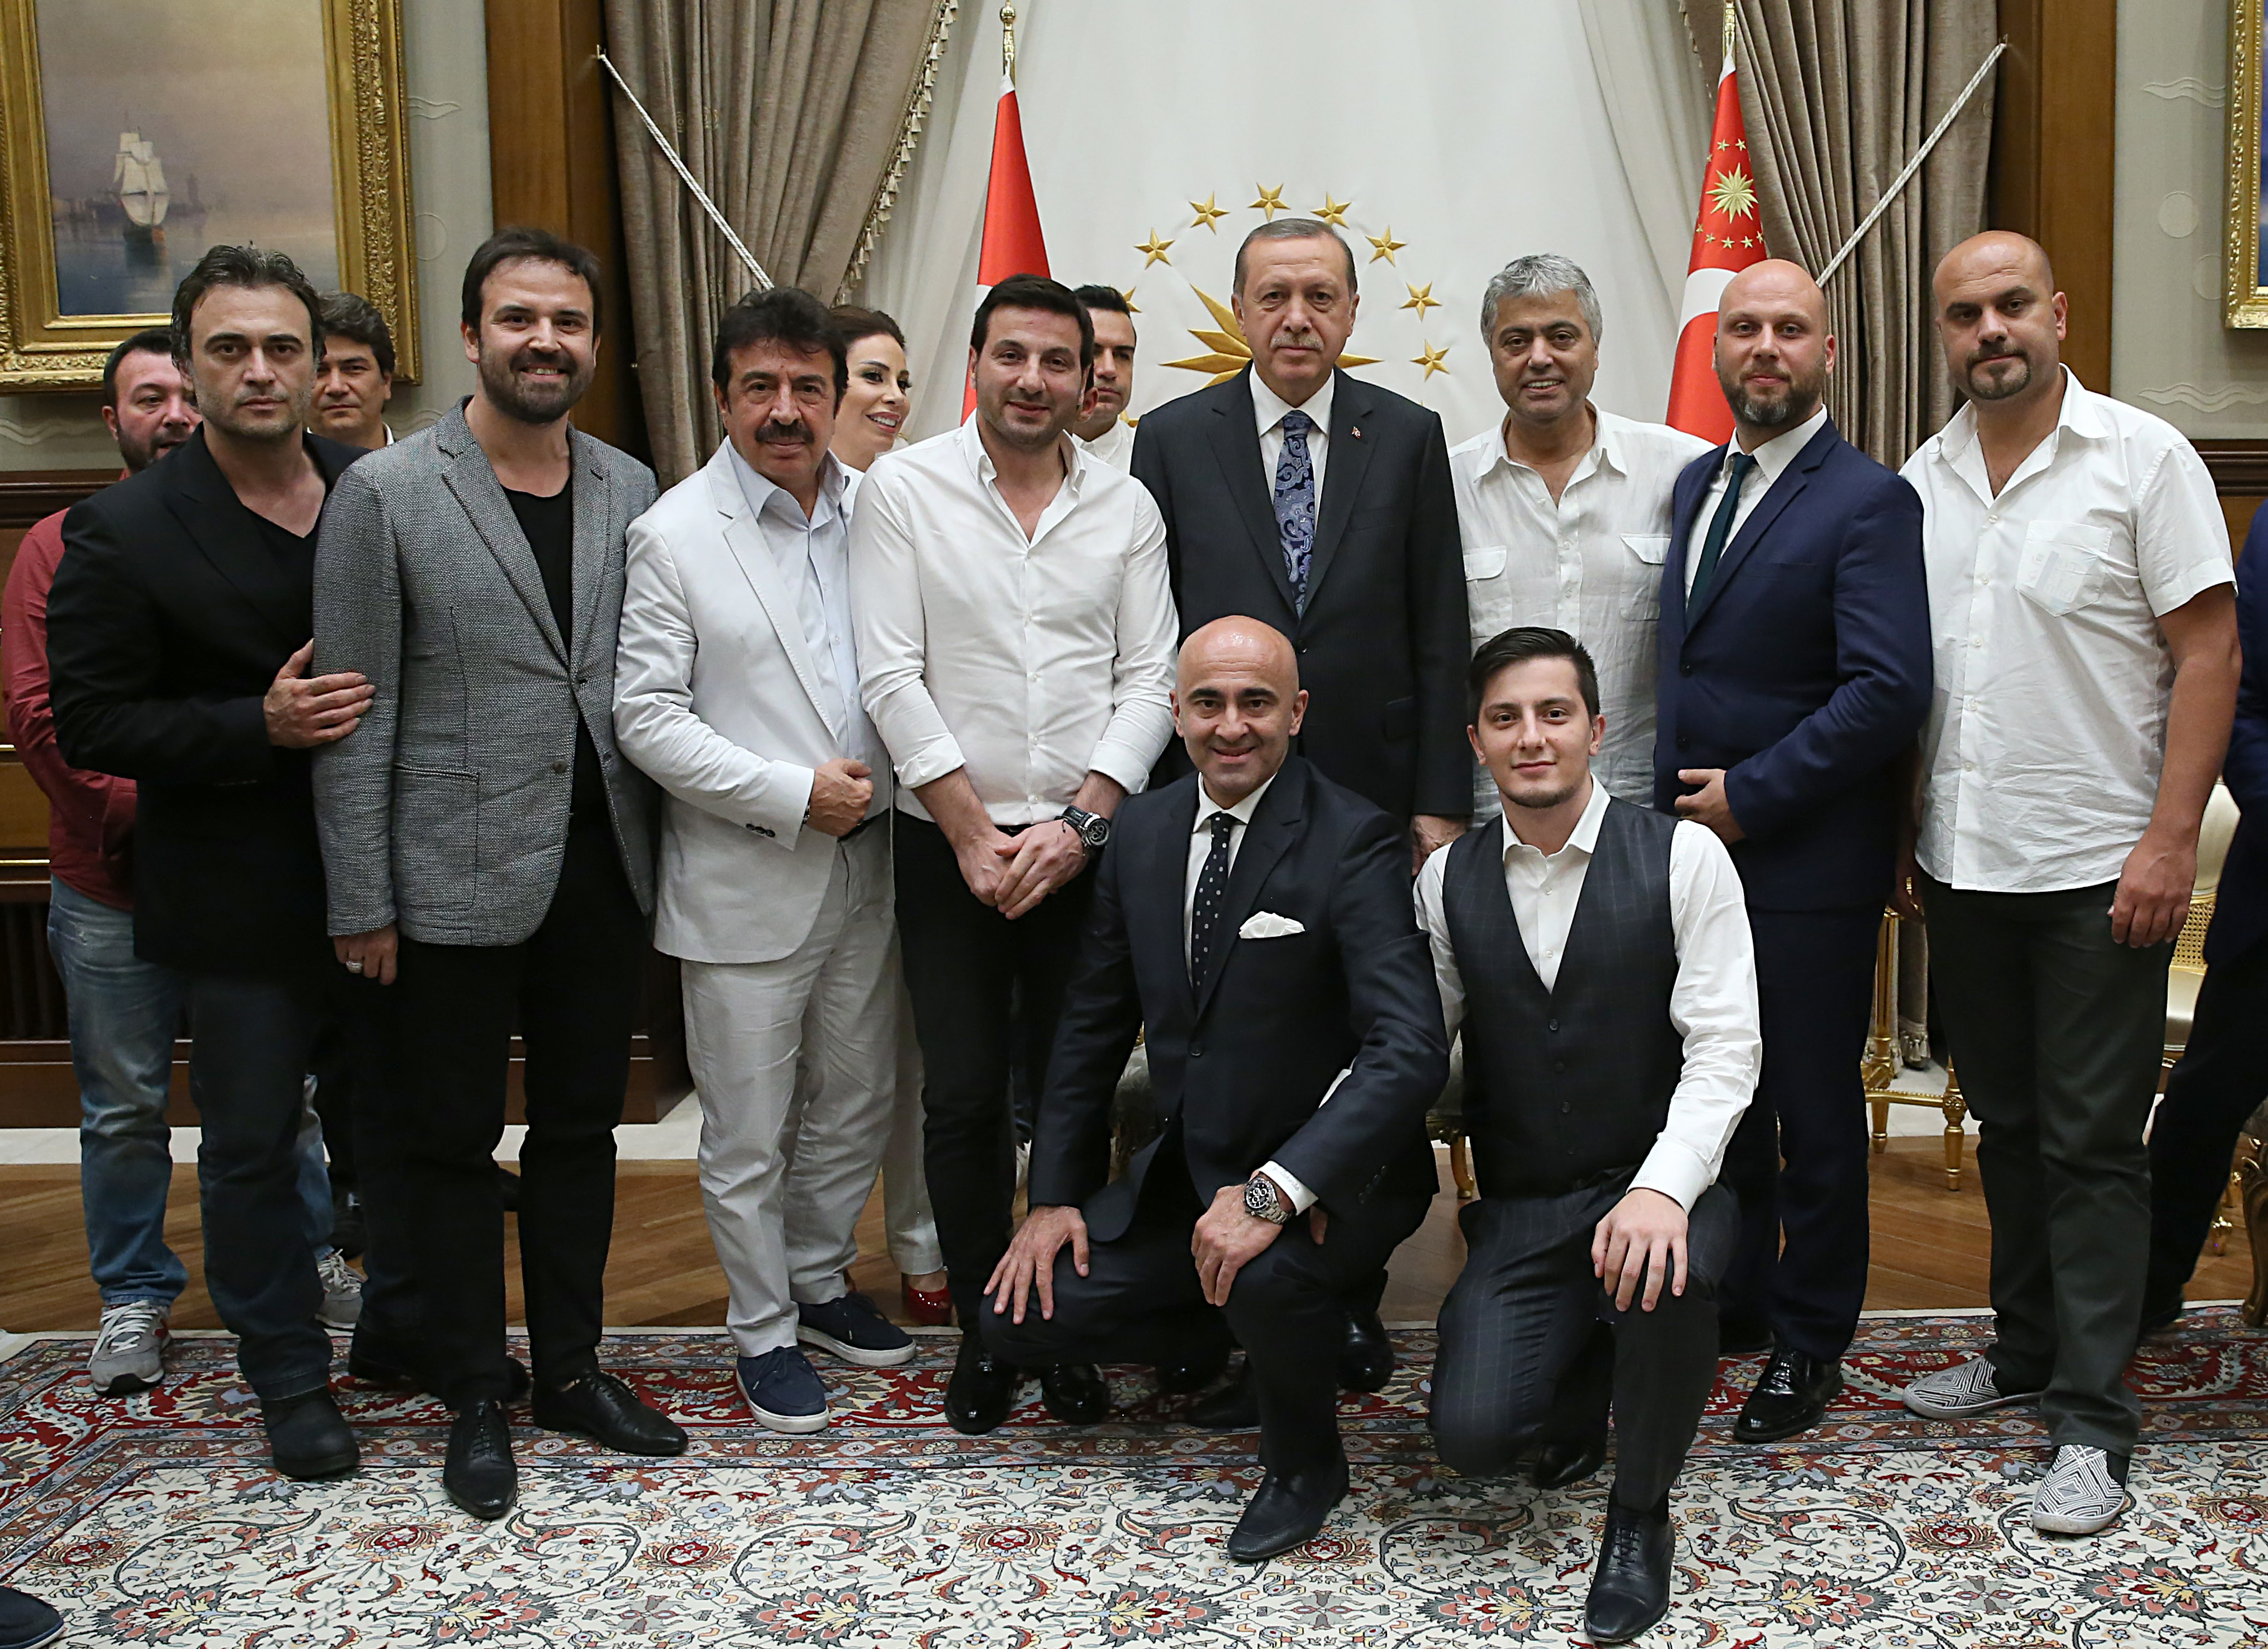 В конце приема была сделана памятная фотография с президентом Эрдоганом.